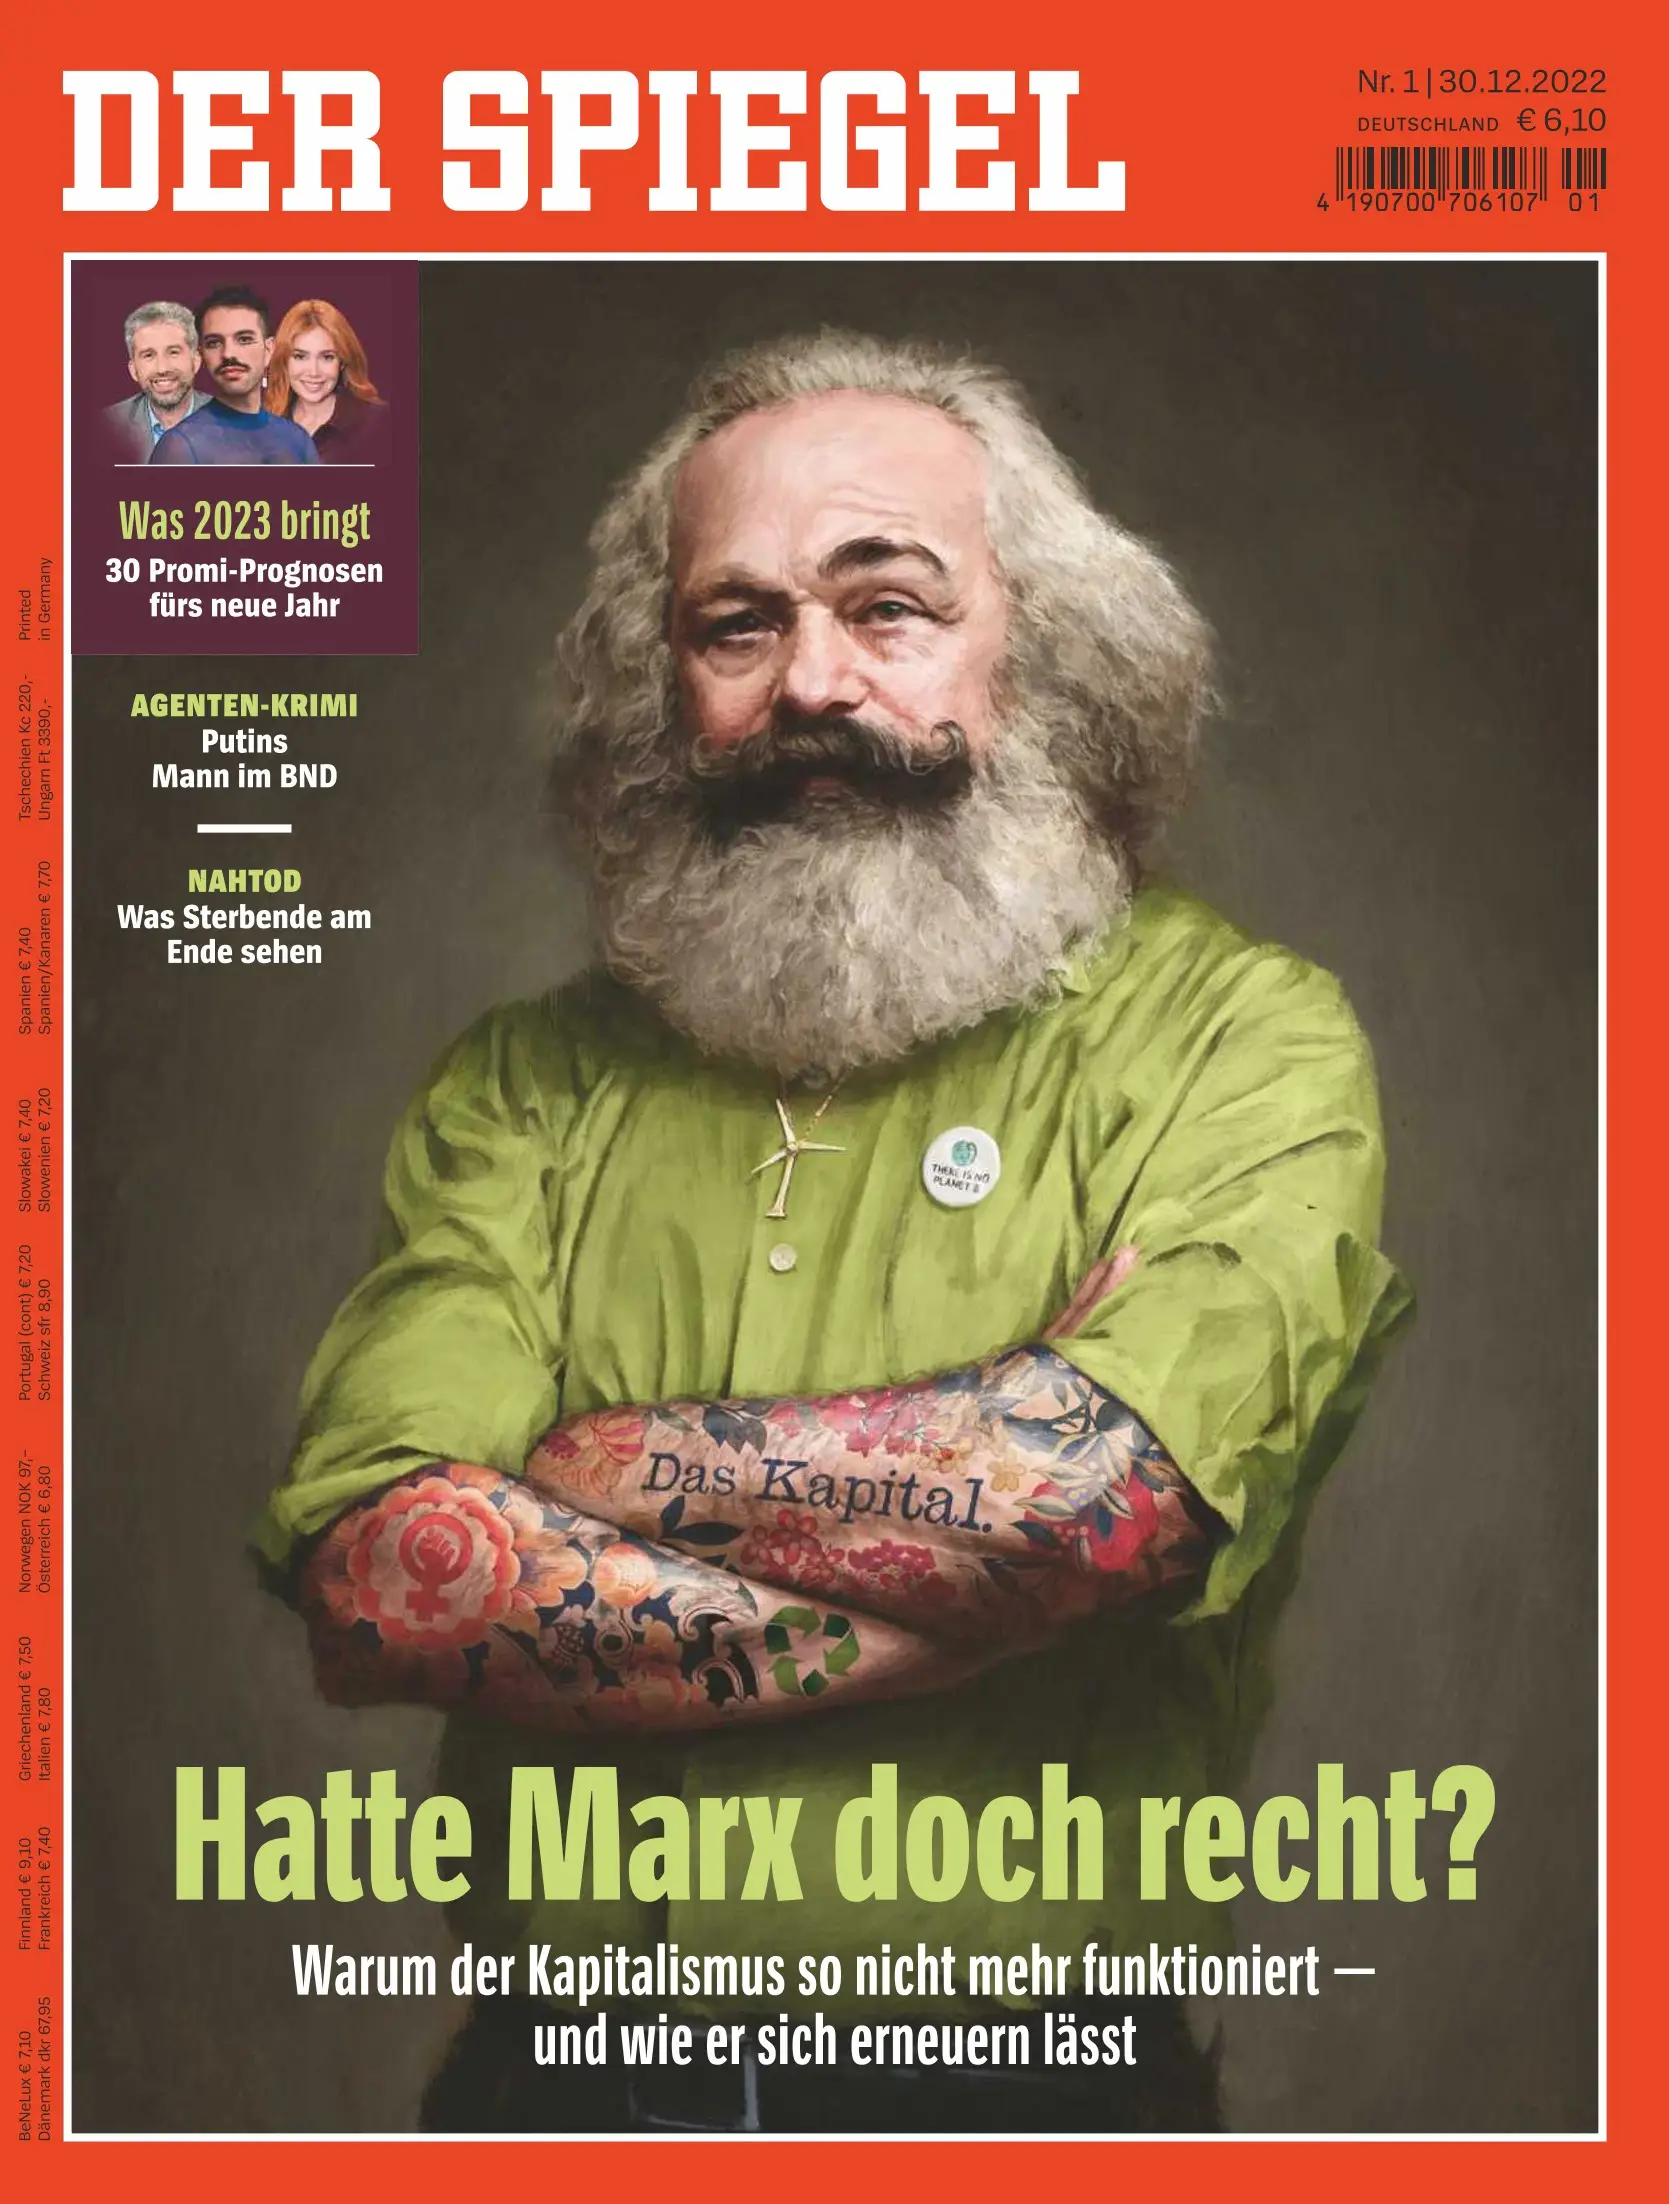 德国《明镜》周刊 Der SPIEGEL 2022年12月30日Nr.1